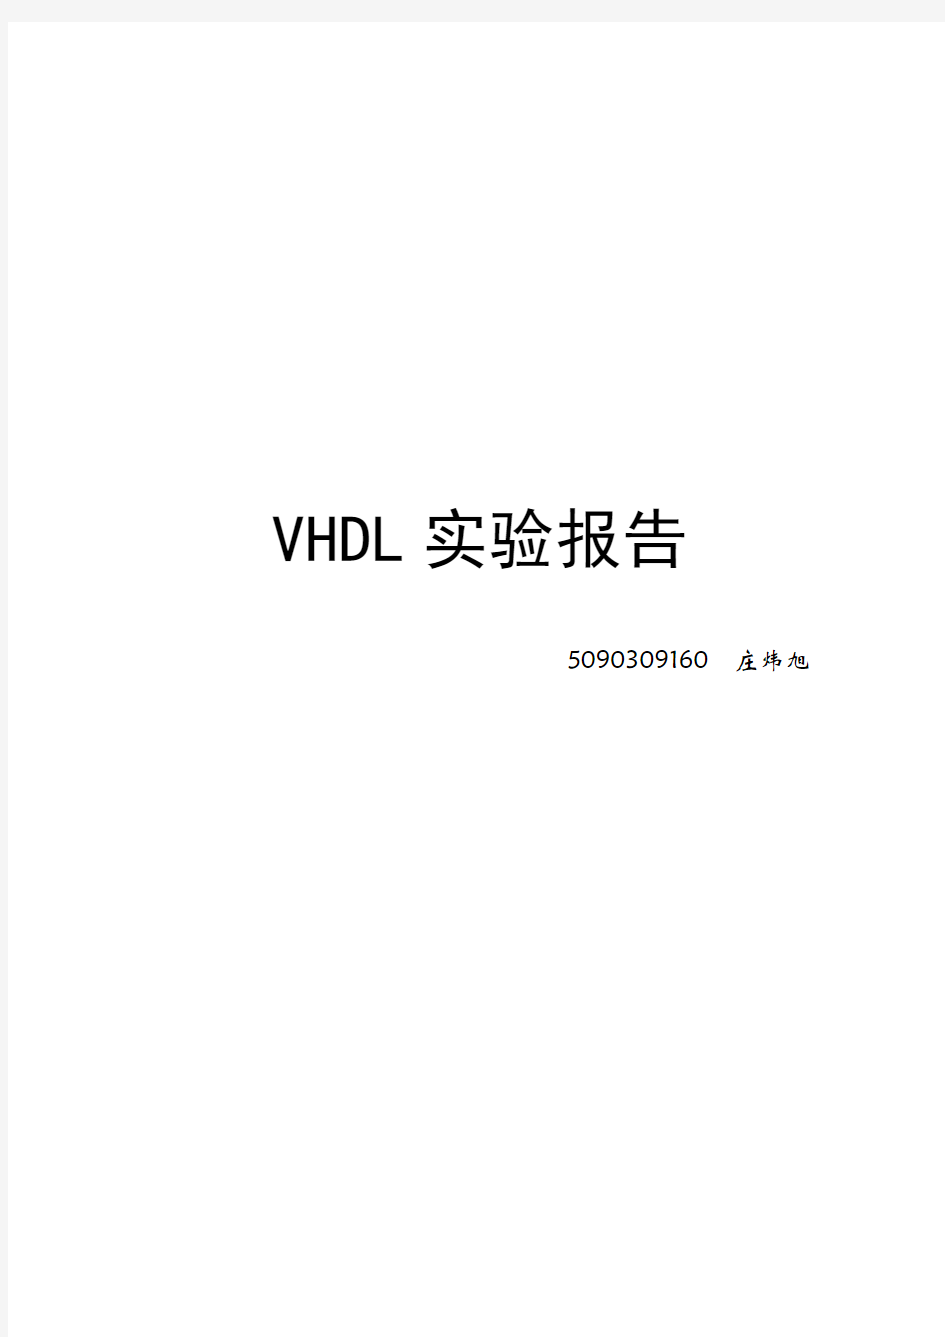 VHDL实验报告